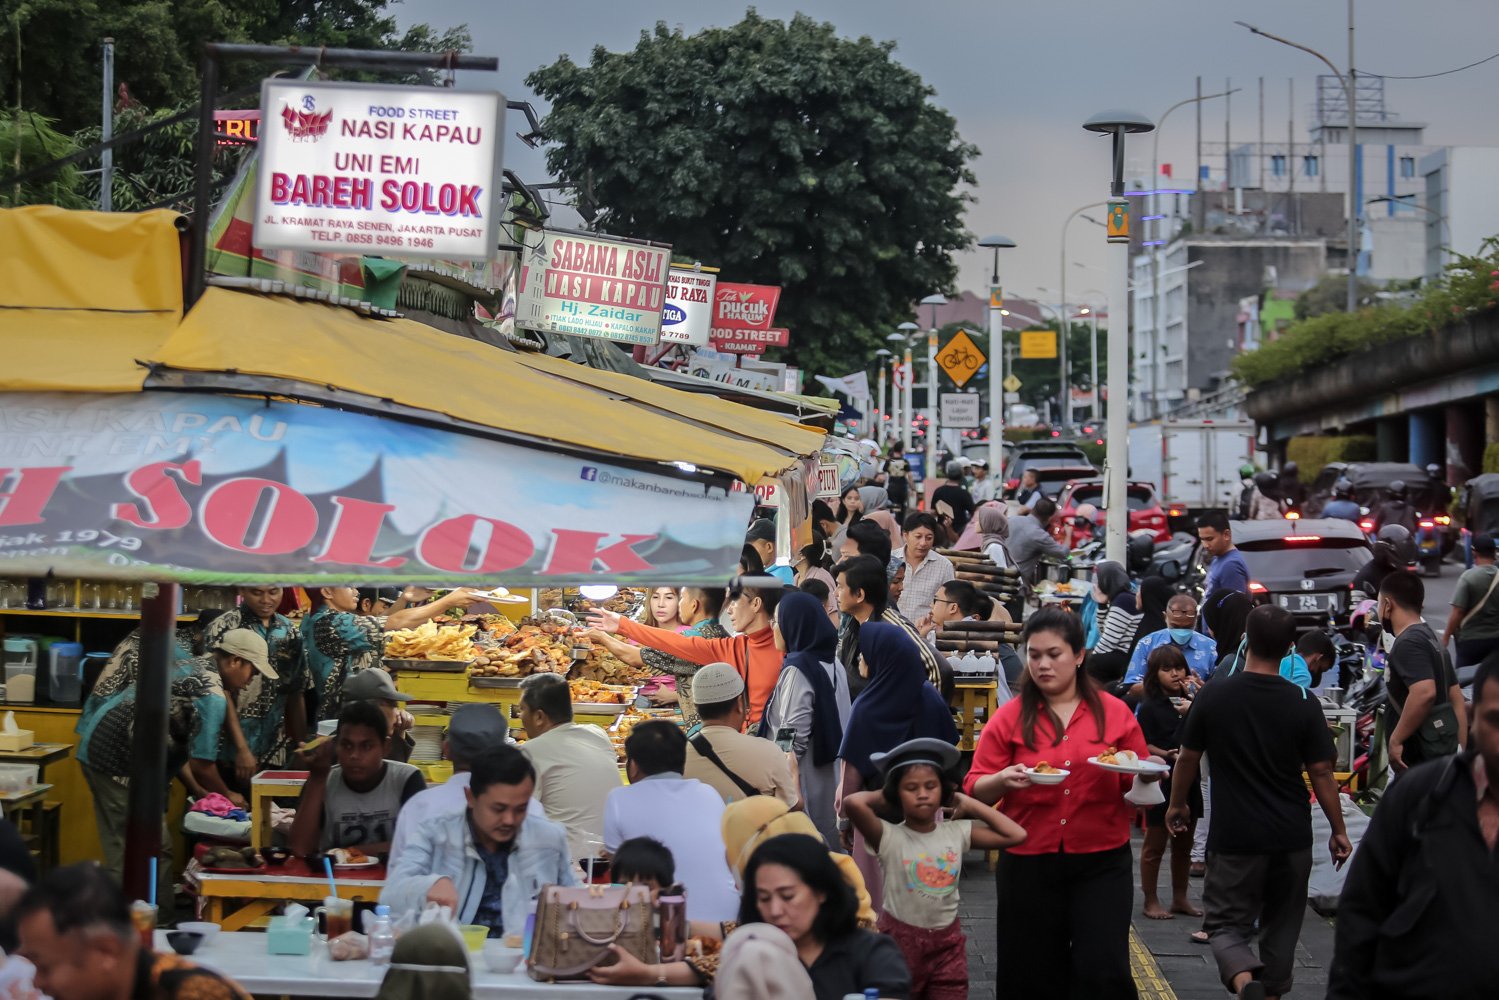 Suasana antrean pembeli menu berbuka puasa di Sentra kuliner Nasi Kapau, Jalan Kramat Raya, Senen, Jakarta Pusat, Jumat (24/3). Menjelang berbuka puasa sentra kuliner yang menyajikan Nasi Kapau dan berbagai makanan khas sumatra barat ini ramai dikunjungi pembeli.